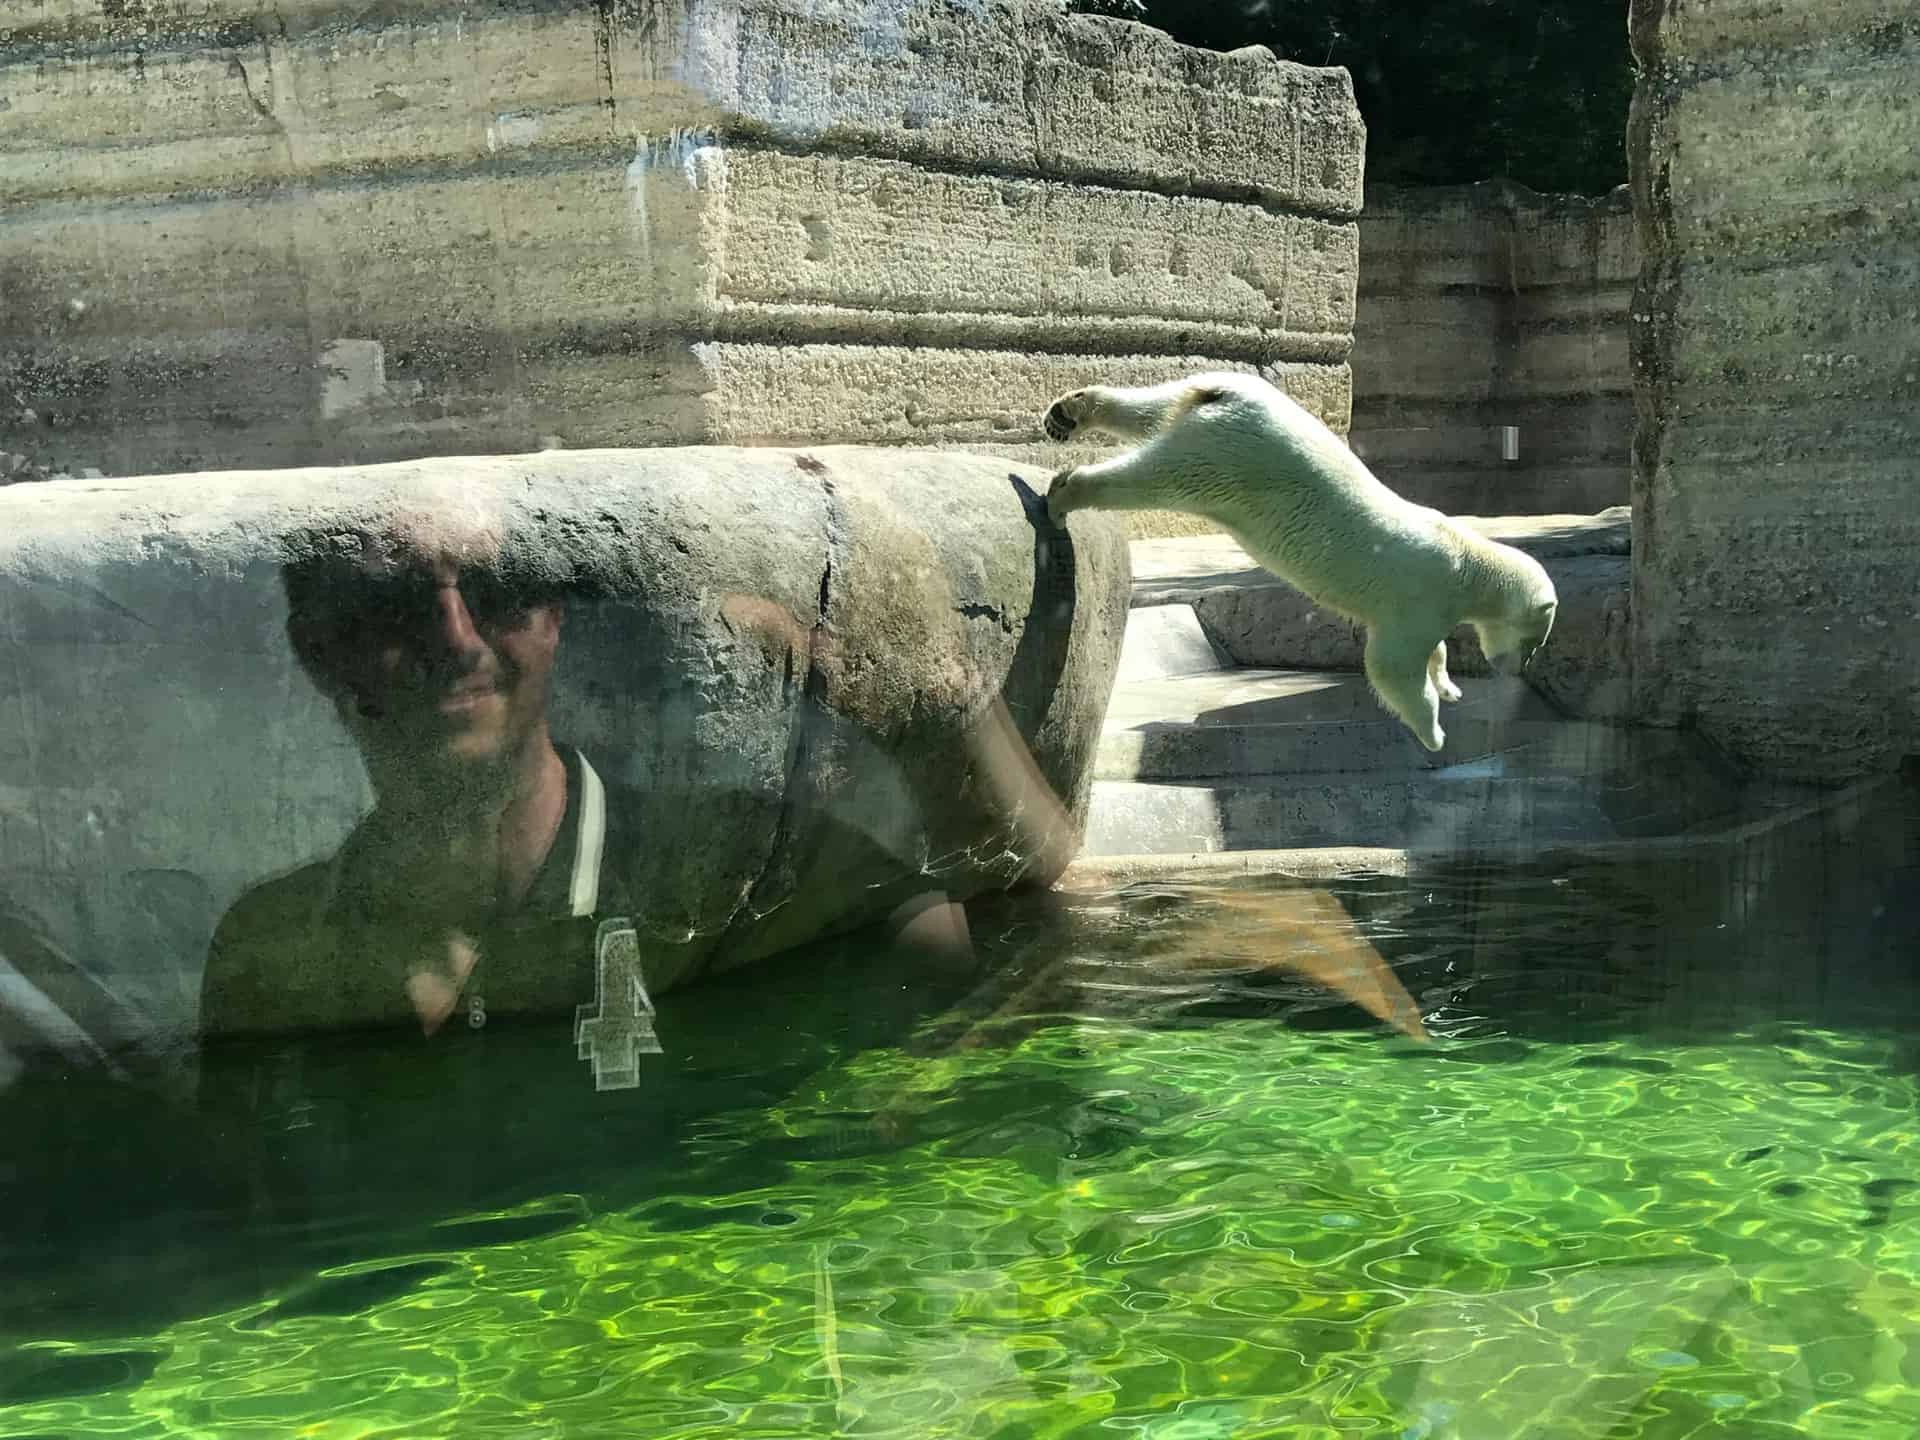 München_Zoo_Hellabrunn_Eisbär_springt_ins_Wasser